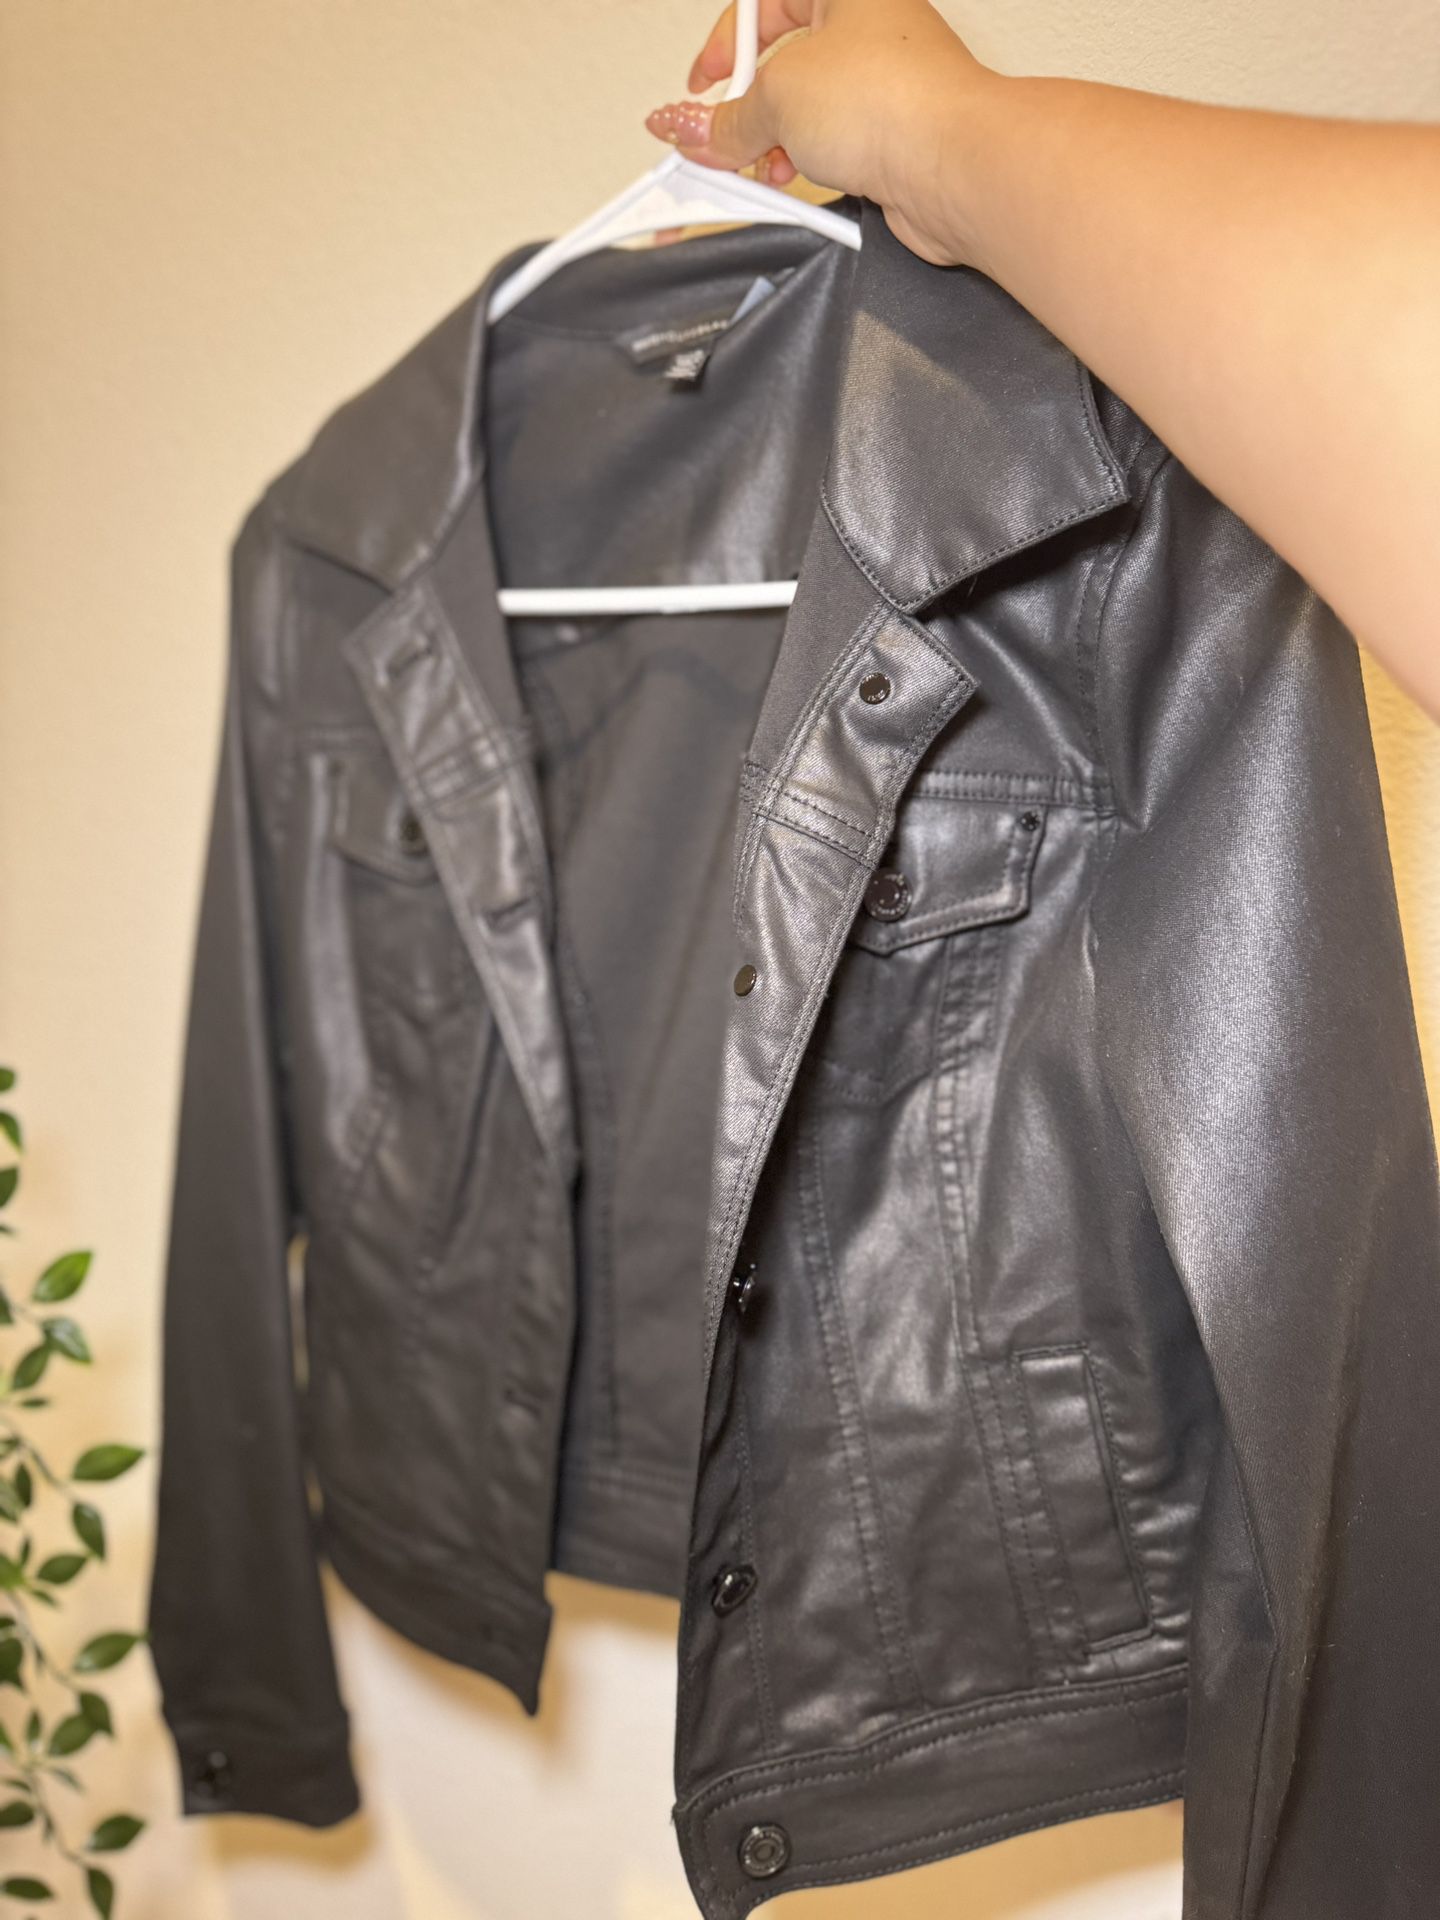 White House Black Market Coated Denim Jacket That Looks Like Leather